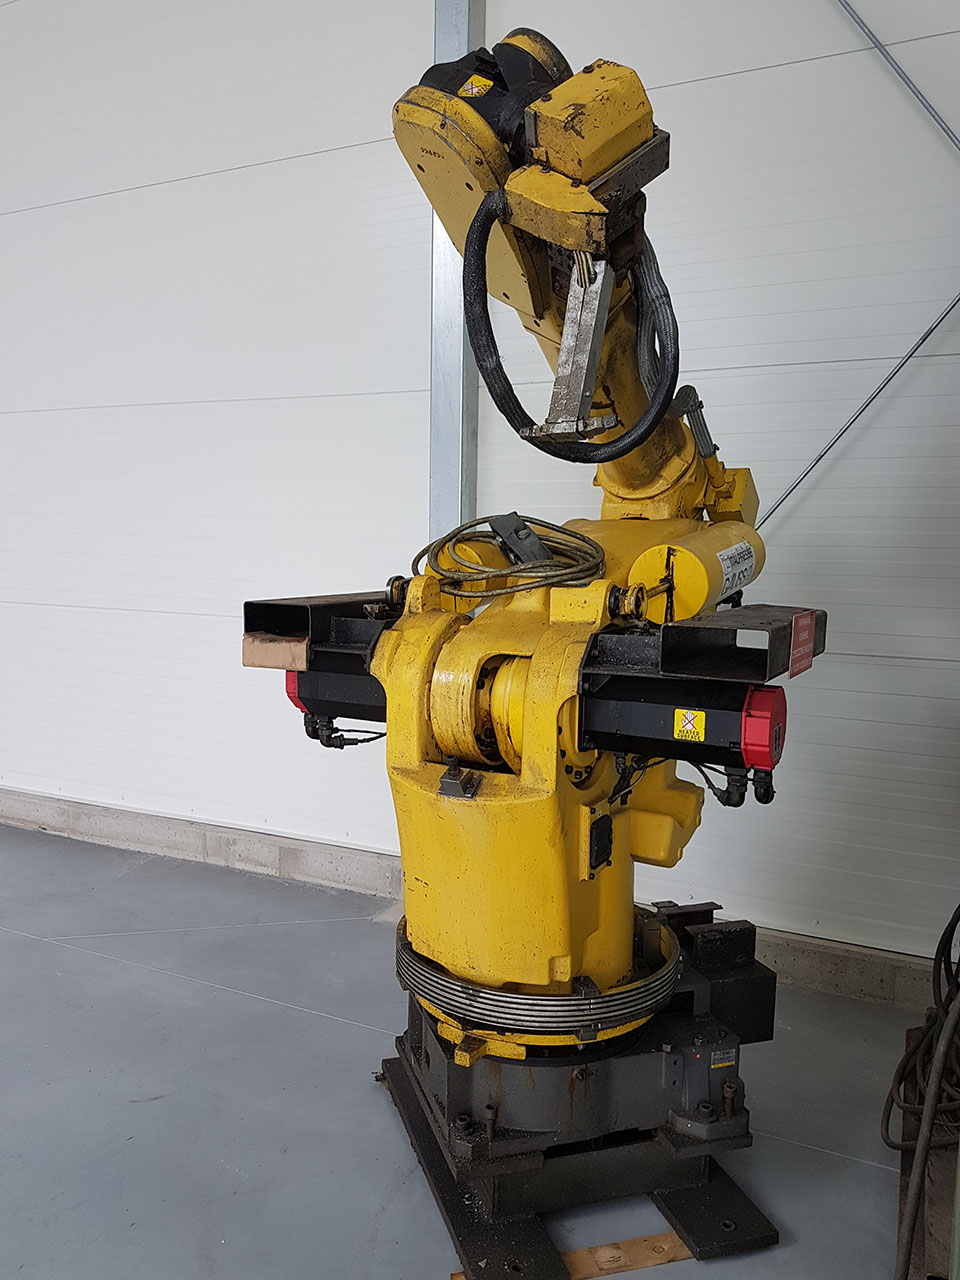 FANUC S-420 i F öntödei robot, használt HR1815